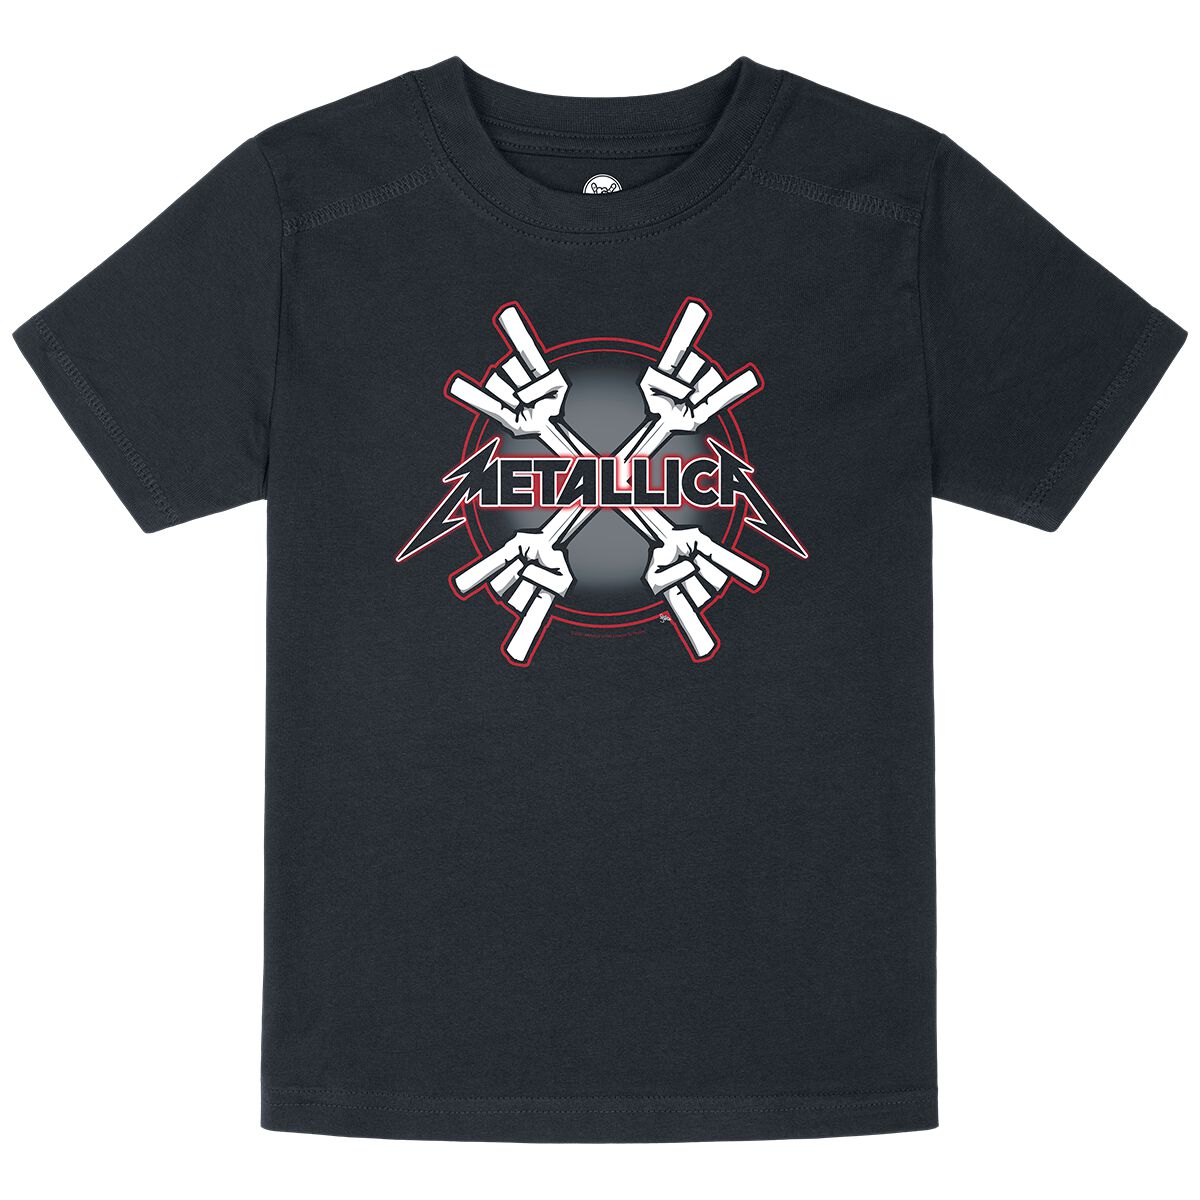 Metallica T-Shirt für Kinder - Metal-Kids - Crosshorns - für Mädchen & Jungen - schwarz  - Lizenziertes Merchandise!